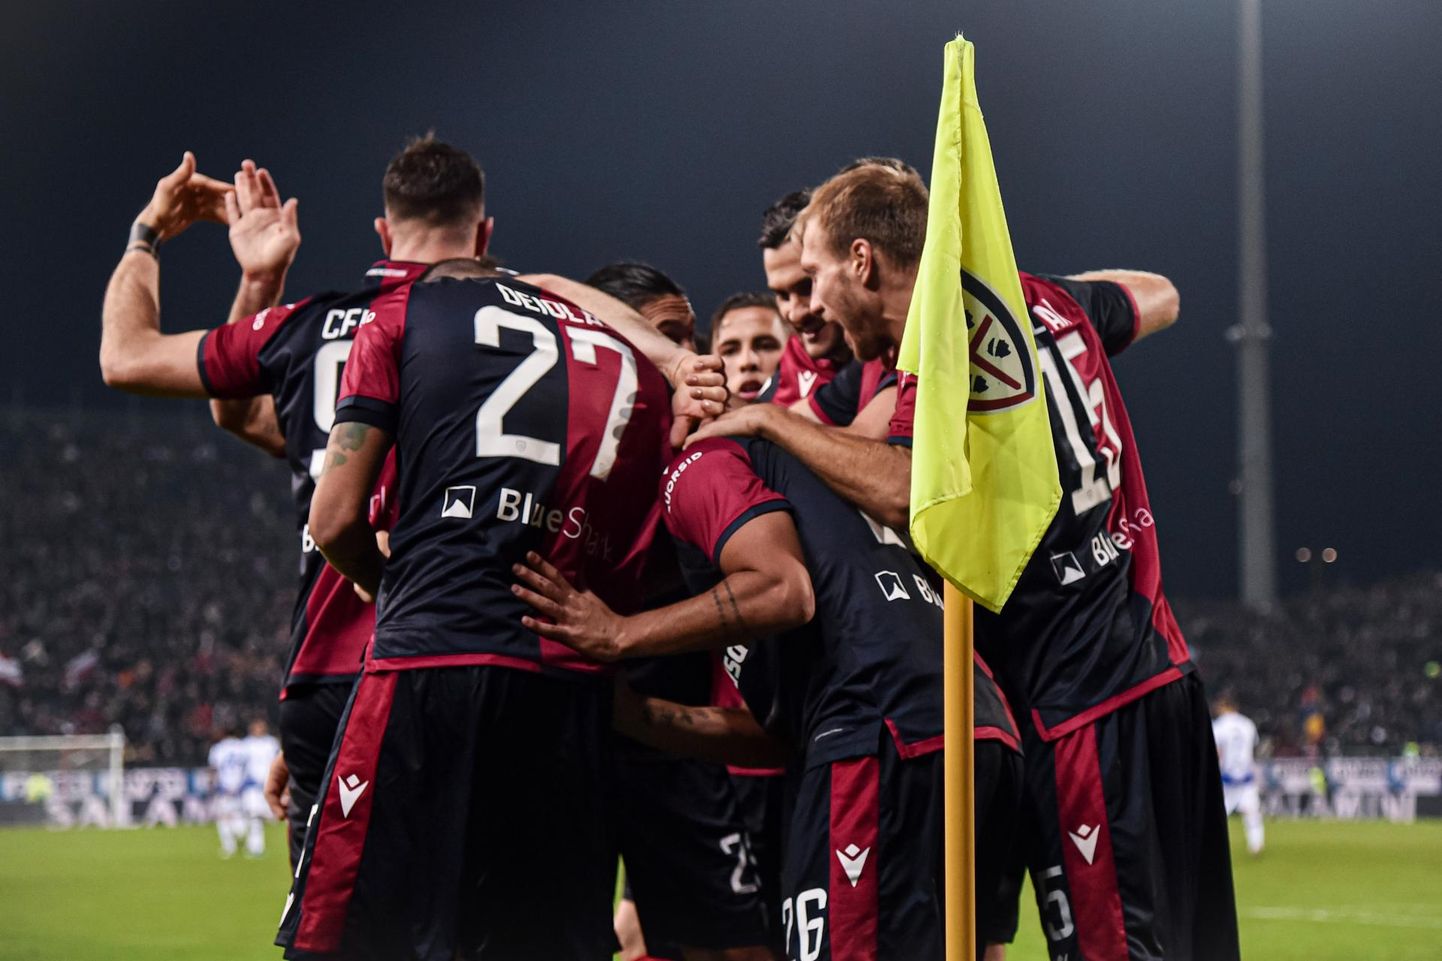 Cagliari Calcio sai sel nädalal ühe ja sama vastase Sampdoria vastu kaks tähtsat võitu: ühe kõrgliigas ja teise karikasarjas.